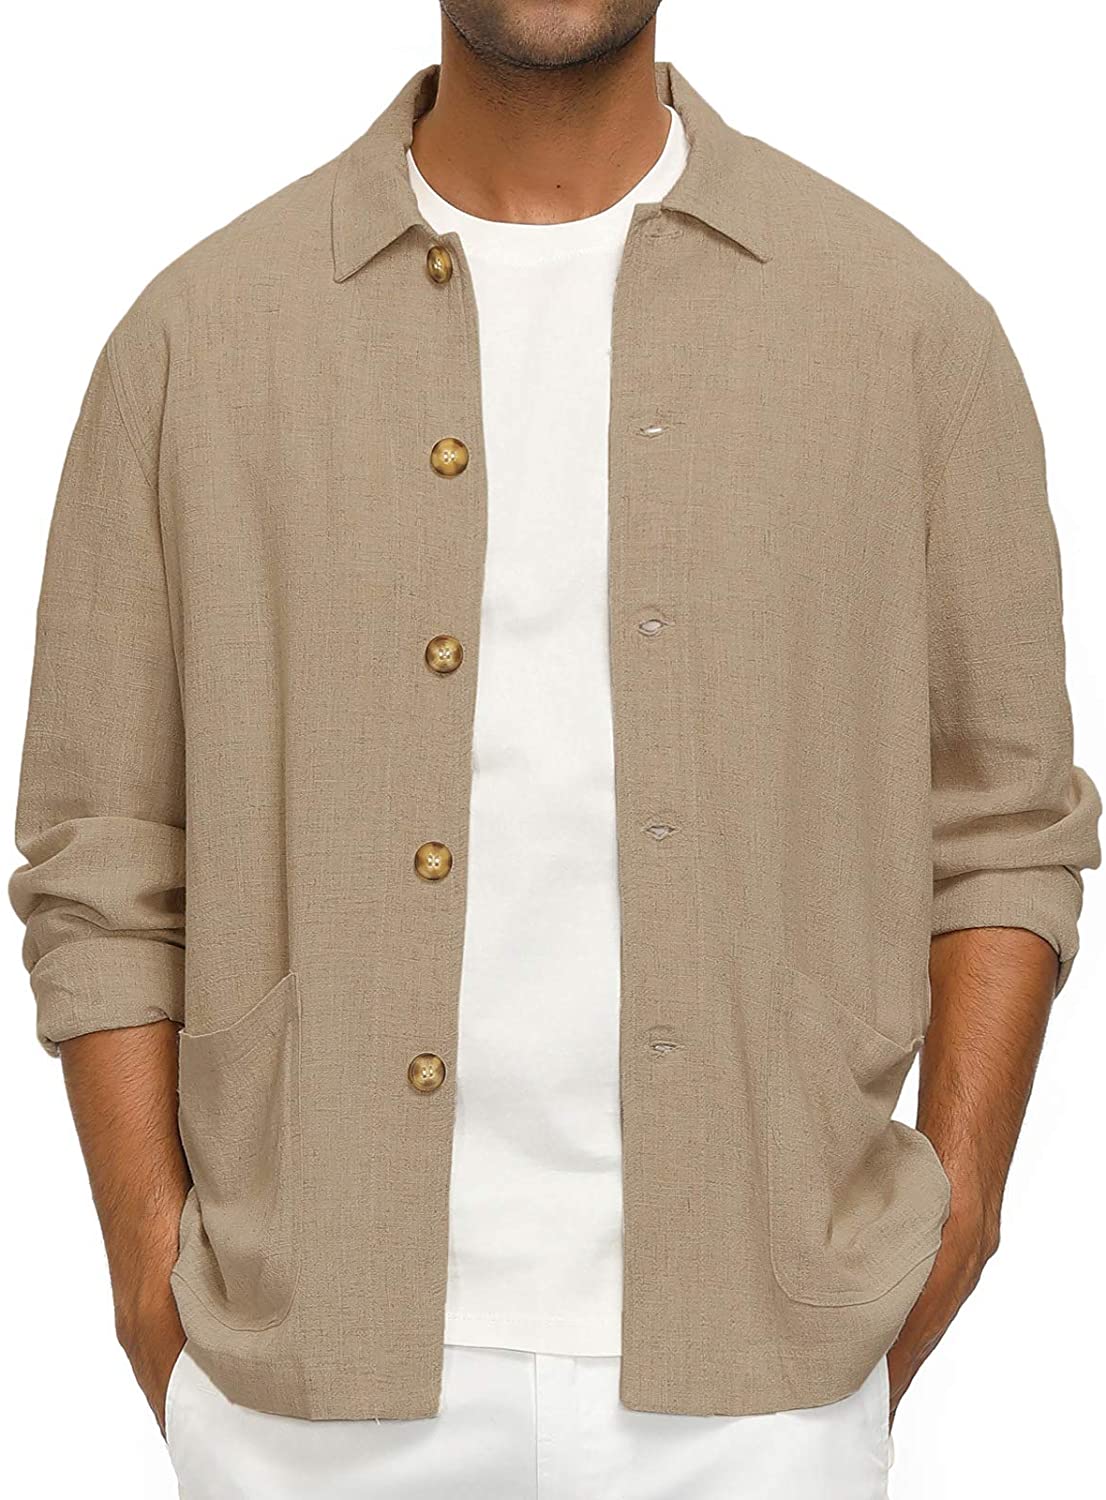 PJ PAUL JONES Men's Casual Linen Jacket Button Down Lightweight Shirt  Jacket | eBay